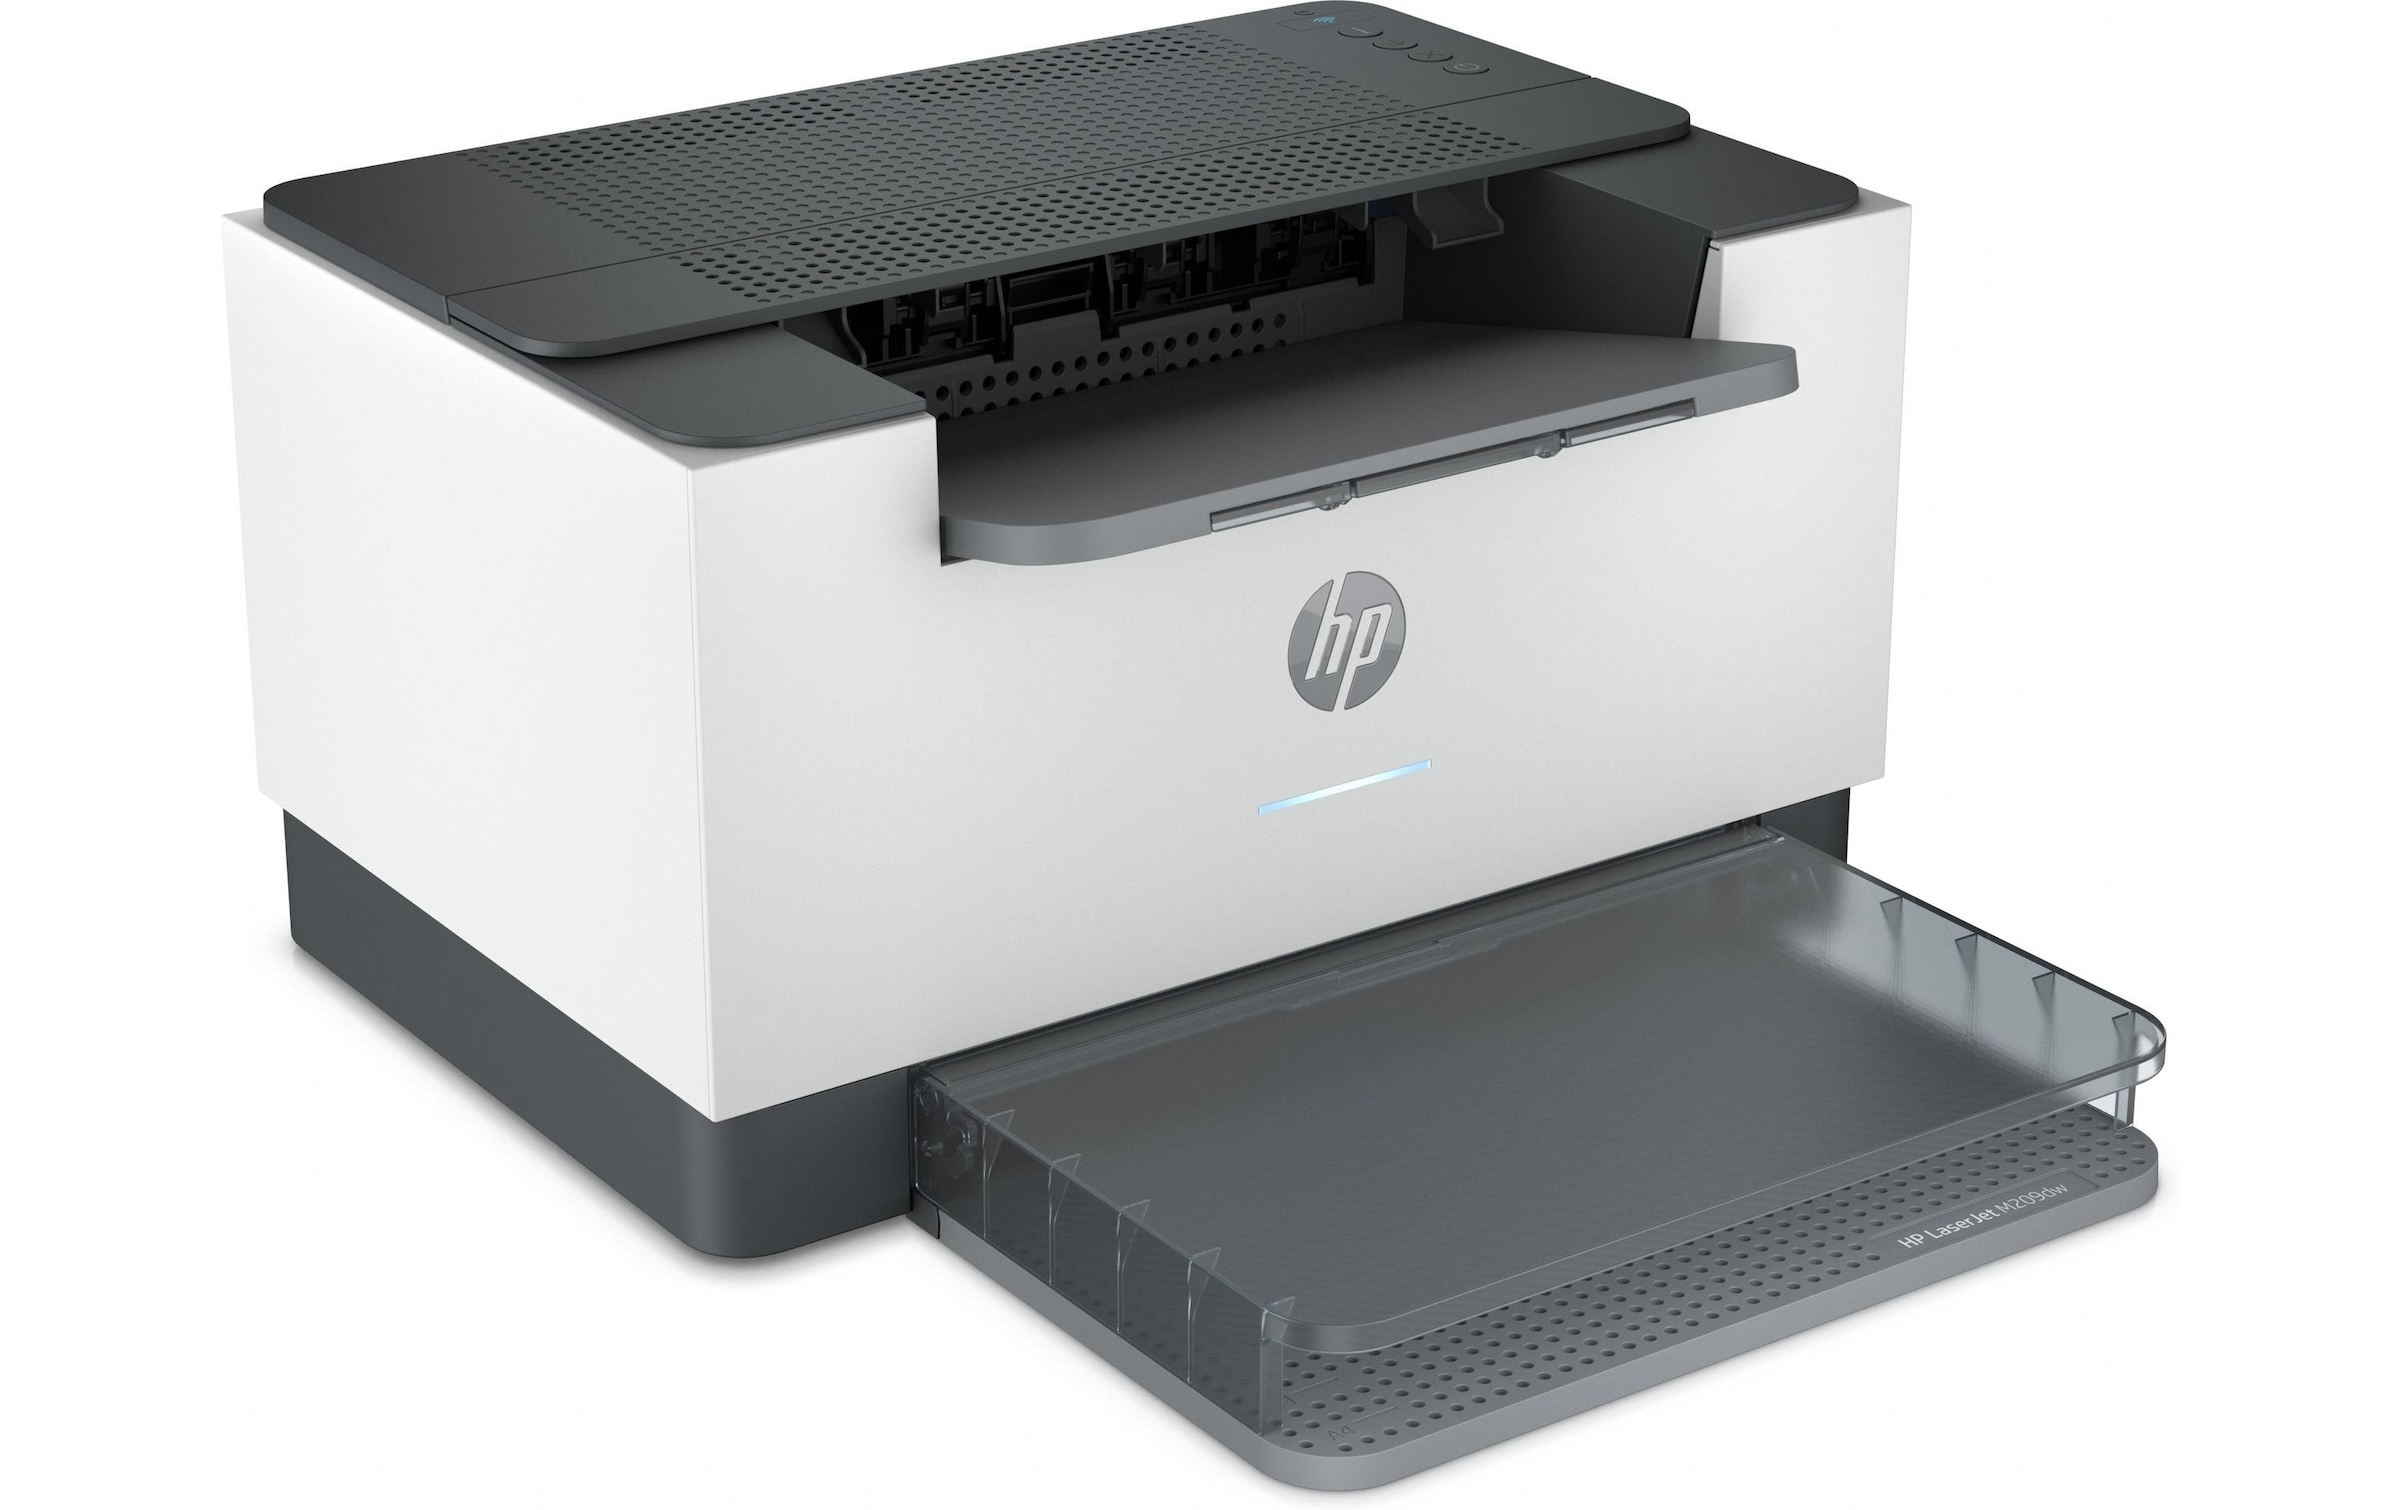 HP Laserdrucker »M209dw«